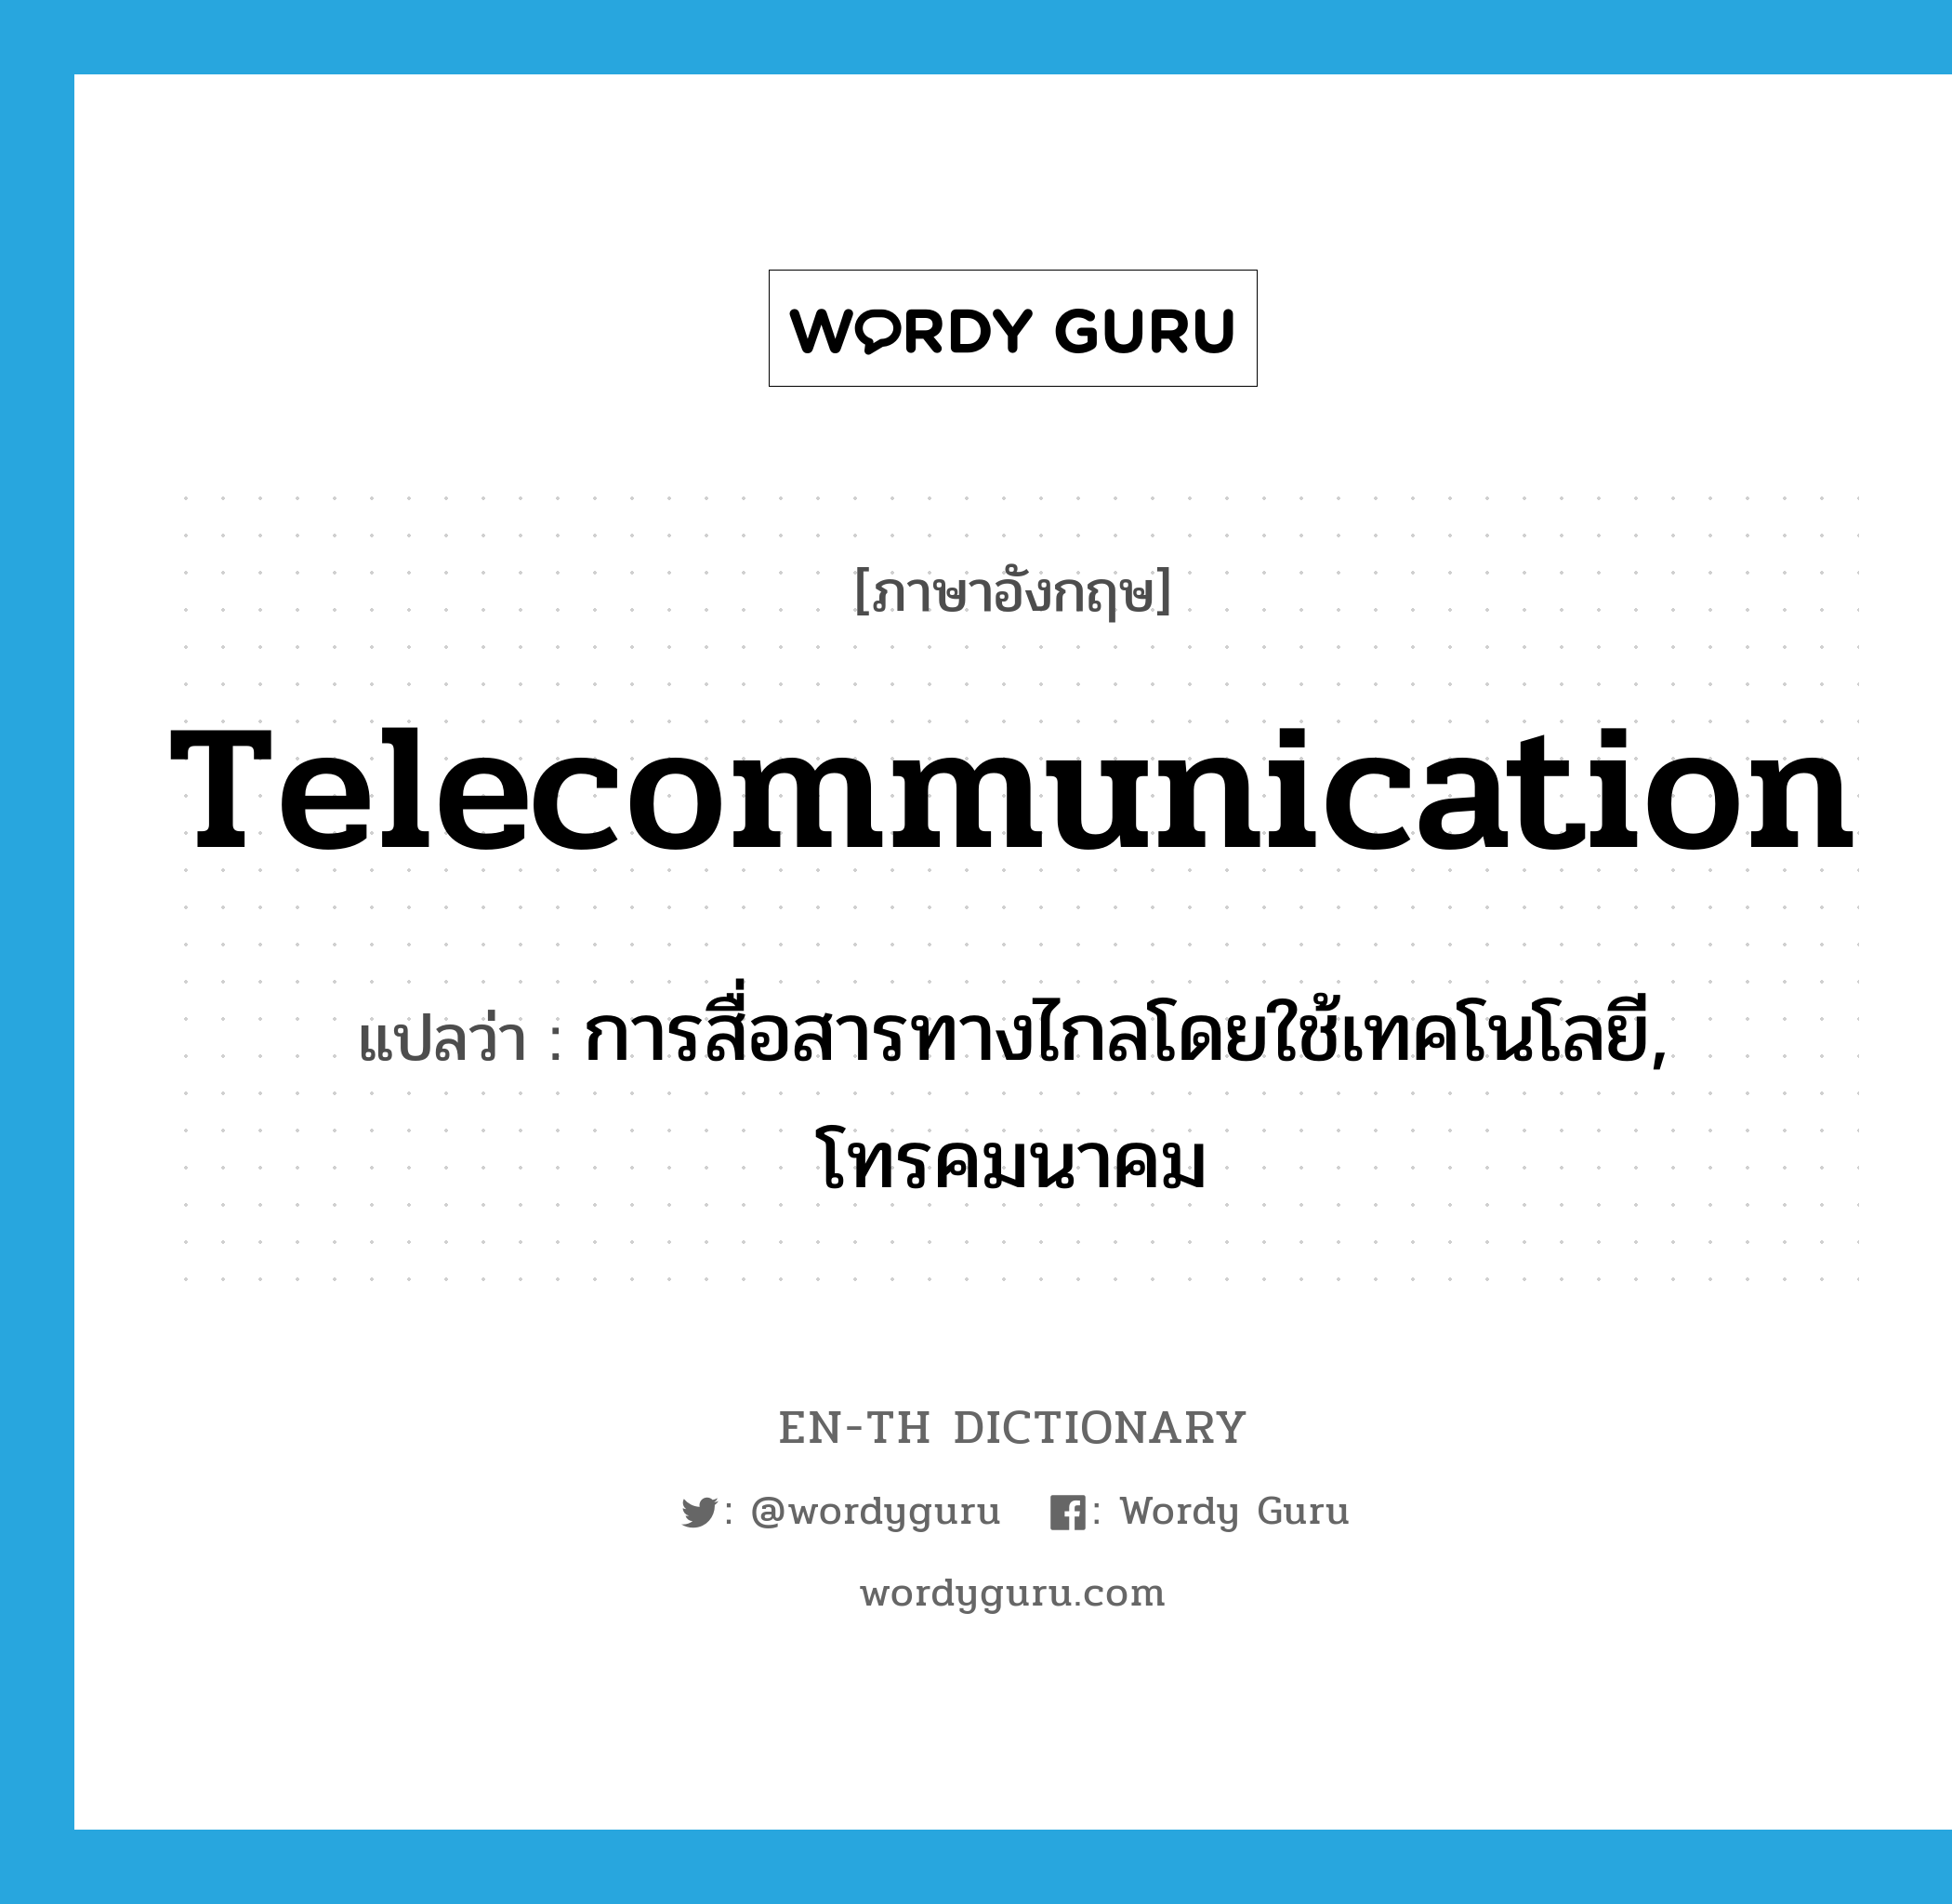 การสื่อสารทางไกลโดยใช้เทคโนโลยี, โทรคมนาคม ภาษาอังกฤษ?, คำศัพท์ภาษาอังกฤษ การสื่อสารทางไกลโดยใช้เทคโนโลยี, โทรคมนาคม แปลว่า telecommunication ประเภท N หมวด N